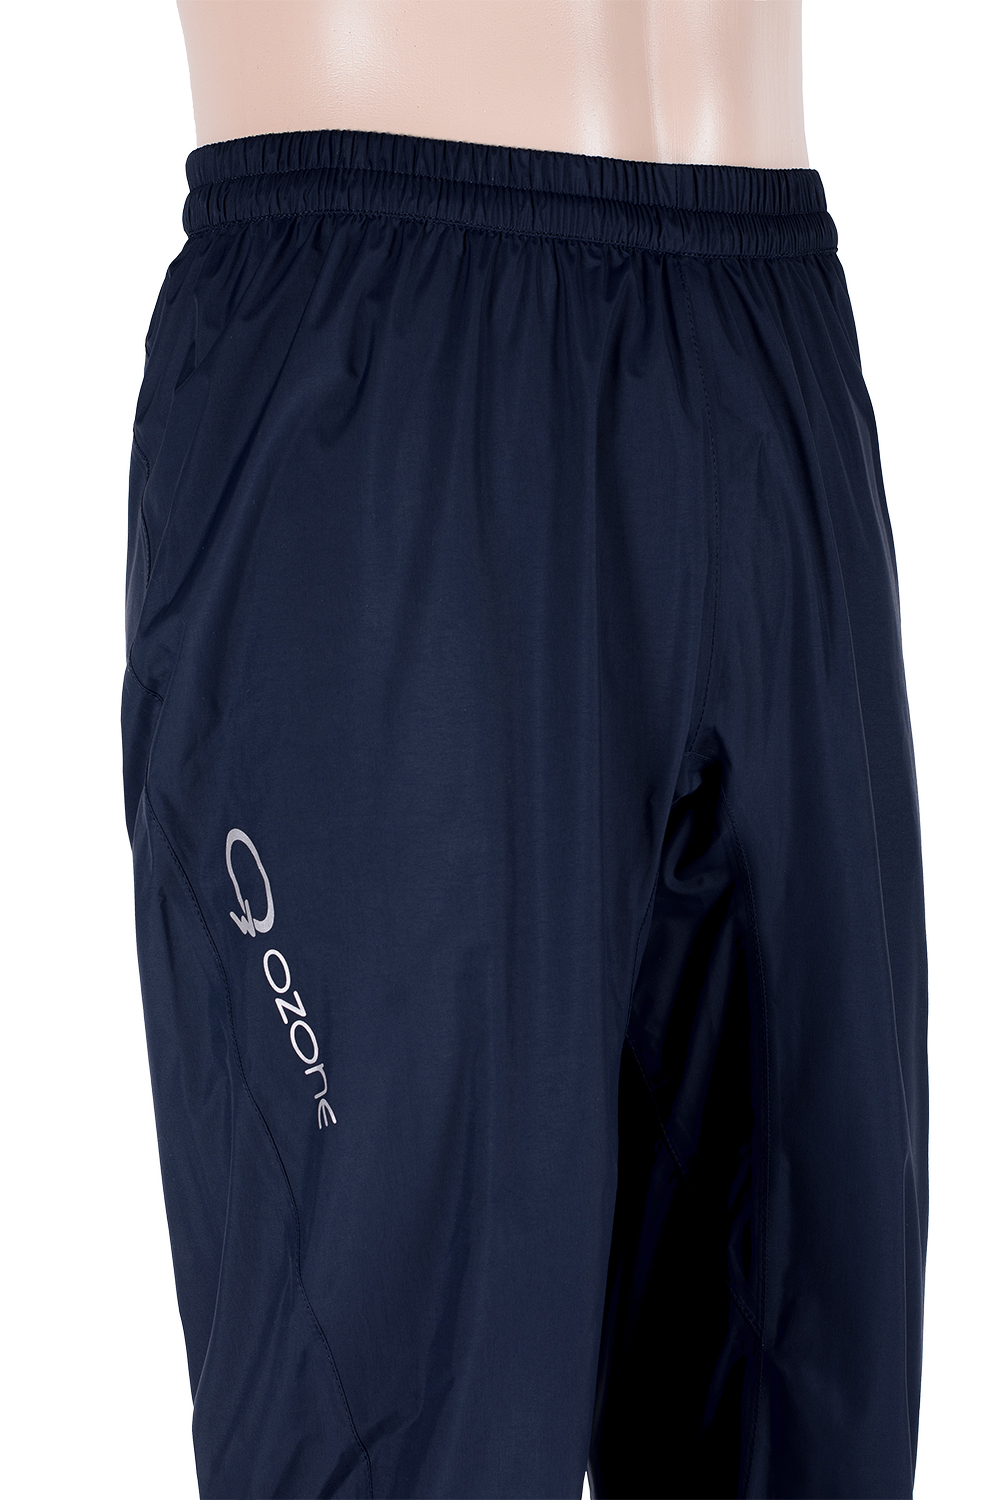 Брюки мембранные Airy из 2.5L купить в интернет магазине экипировочной одежды O3 Ozone